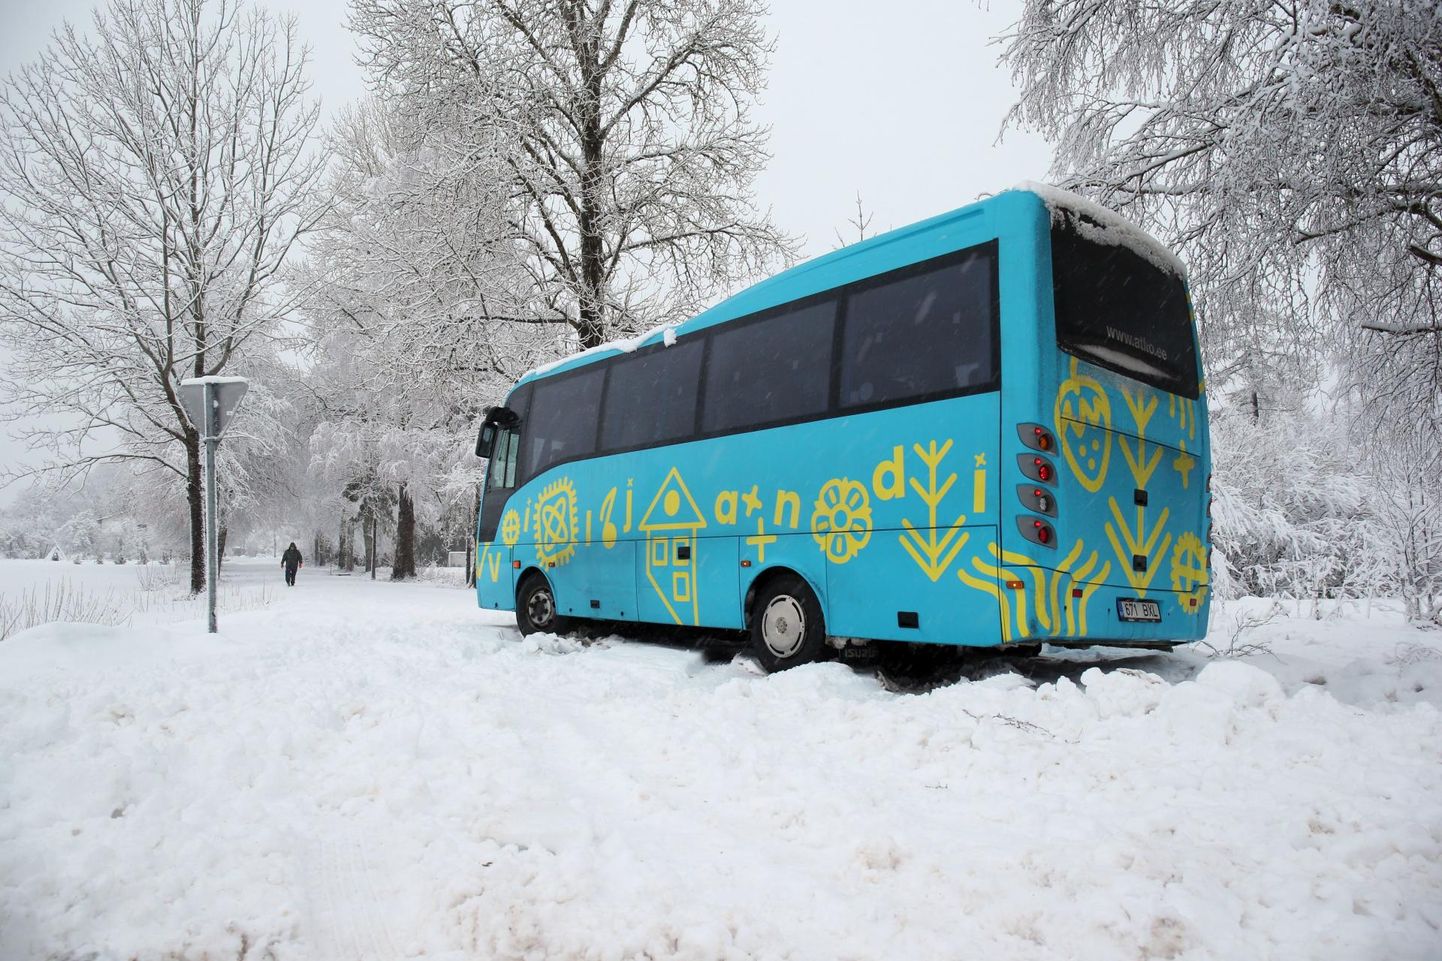 Päidres jäi buss lumevangi ning sõitjad pidi ära viima abibuss.